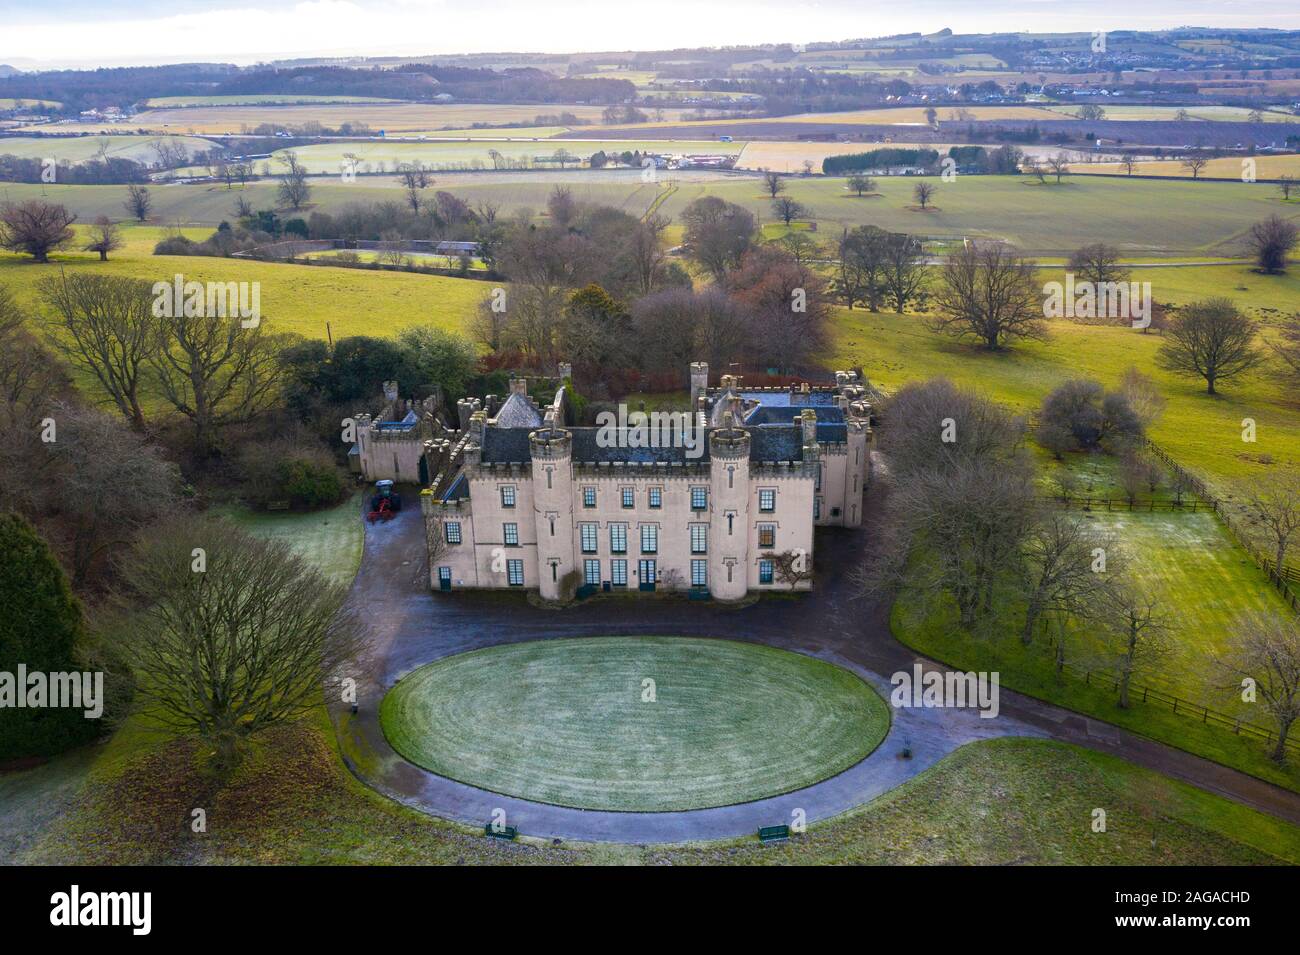 Luftaufnahme des Hauses der Binns, West Lothian, der Heimat der Dalyell Familie, vom National Trust für Schottland besessen. Schottland, Großbritannien. Stockfoto